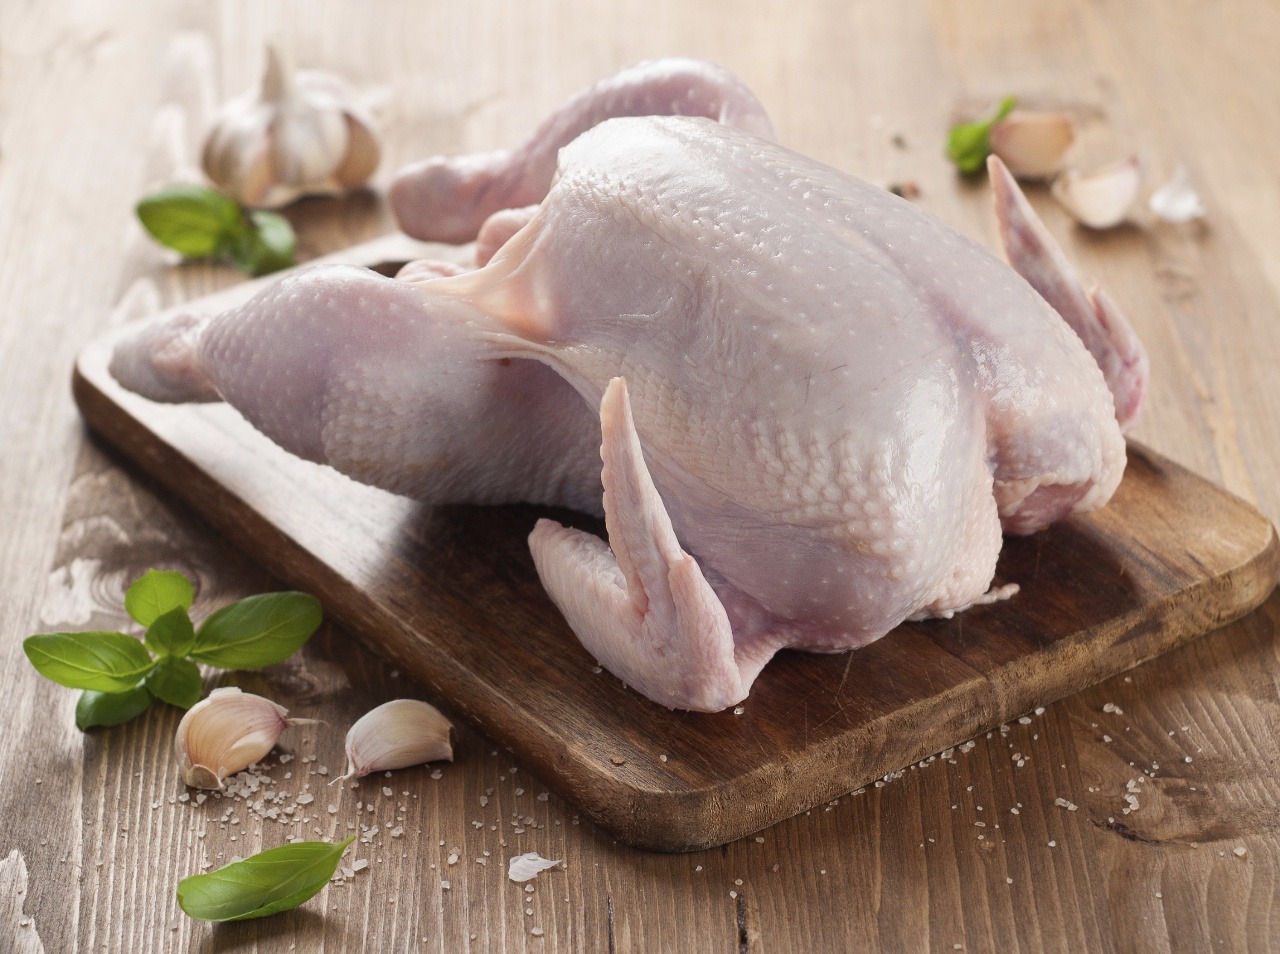 Neumývajte kura pre jeho tepelno úpravou, inak hrozí kontaminácia nebezpečnou baktériou!